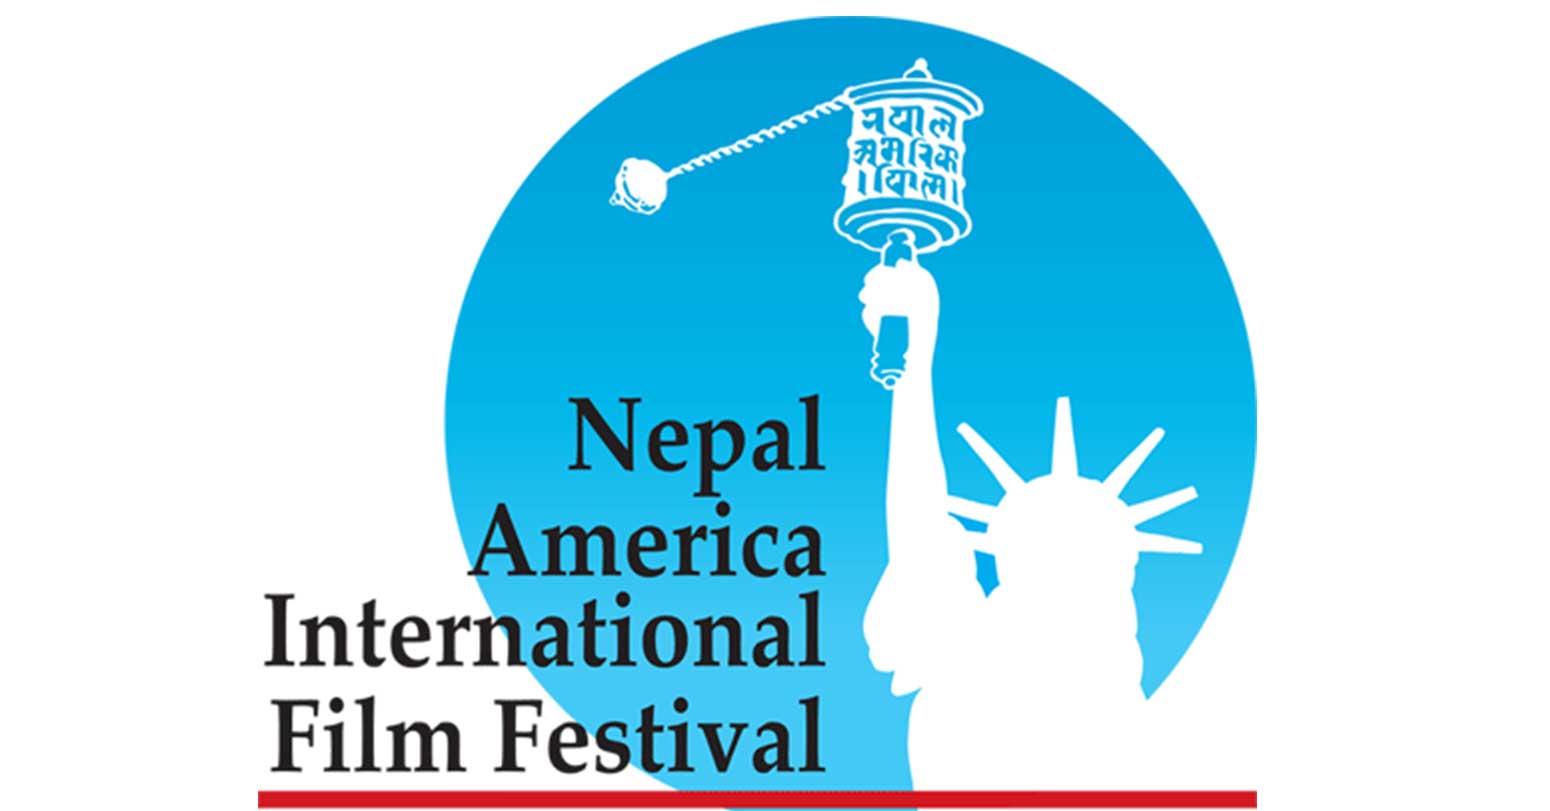 नेपाल-अमेरिका अन्तर्राष्ट्रिय फिल्म महोत्सवको छैटौं संस्करण आयोजना हुने